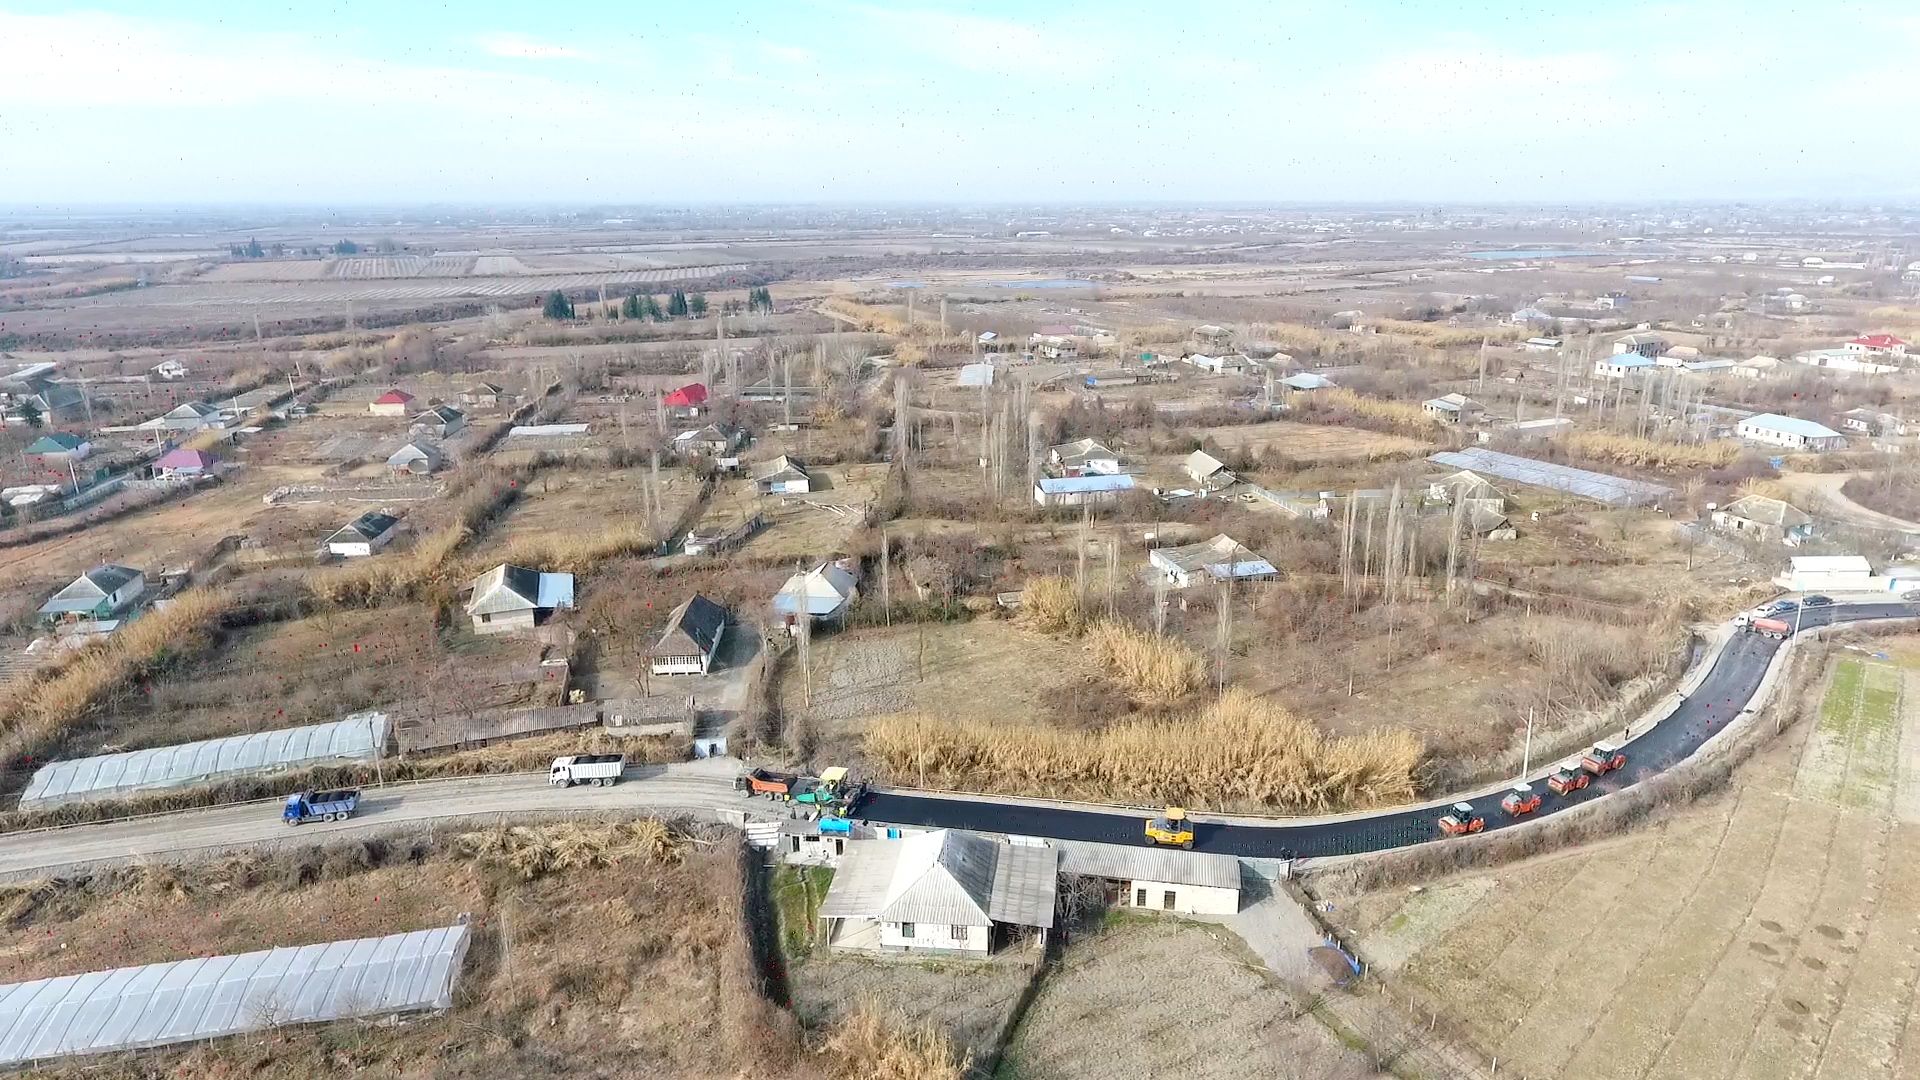 Göyçayda 12.3 km-lik yerli əhəmiyyətli yol yenidən qurulur (FOTO)